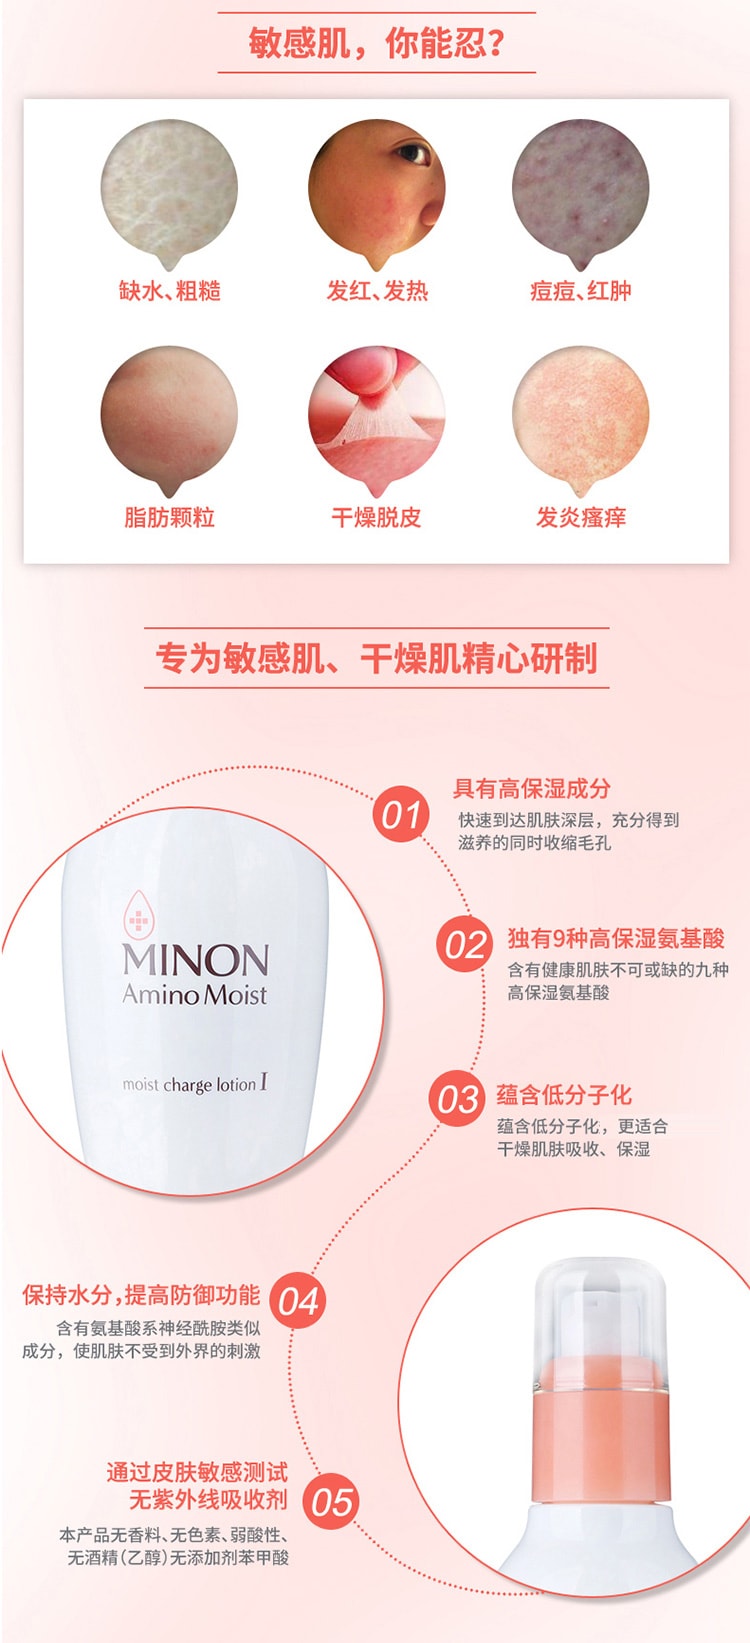 【日本直效郵件】Minon蜜濃 胺基酸 1號化妝水 補水修護敏感滋潤型保濕爽膚水 150ml